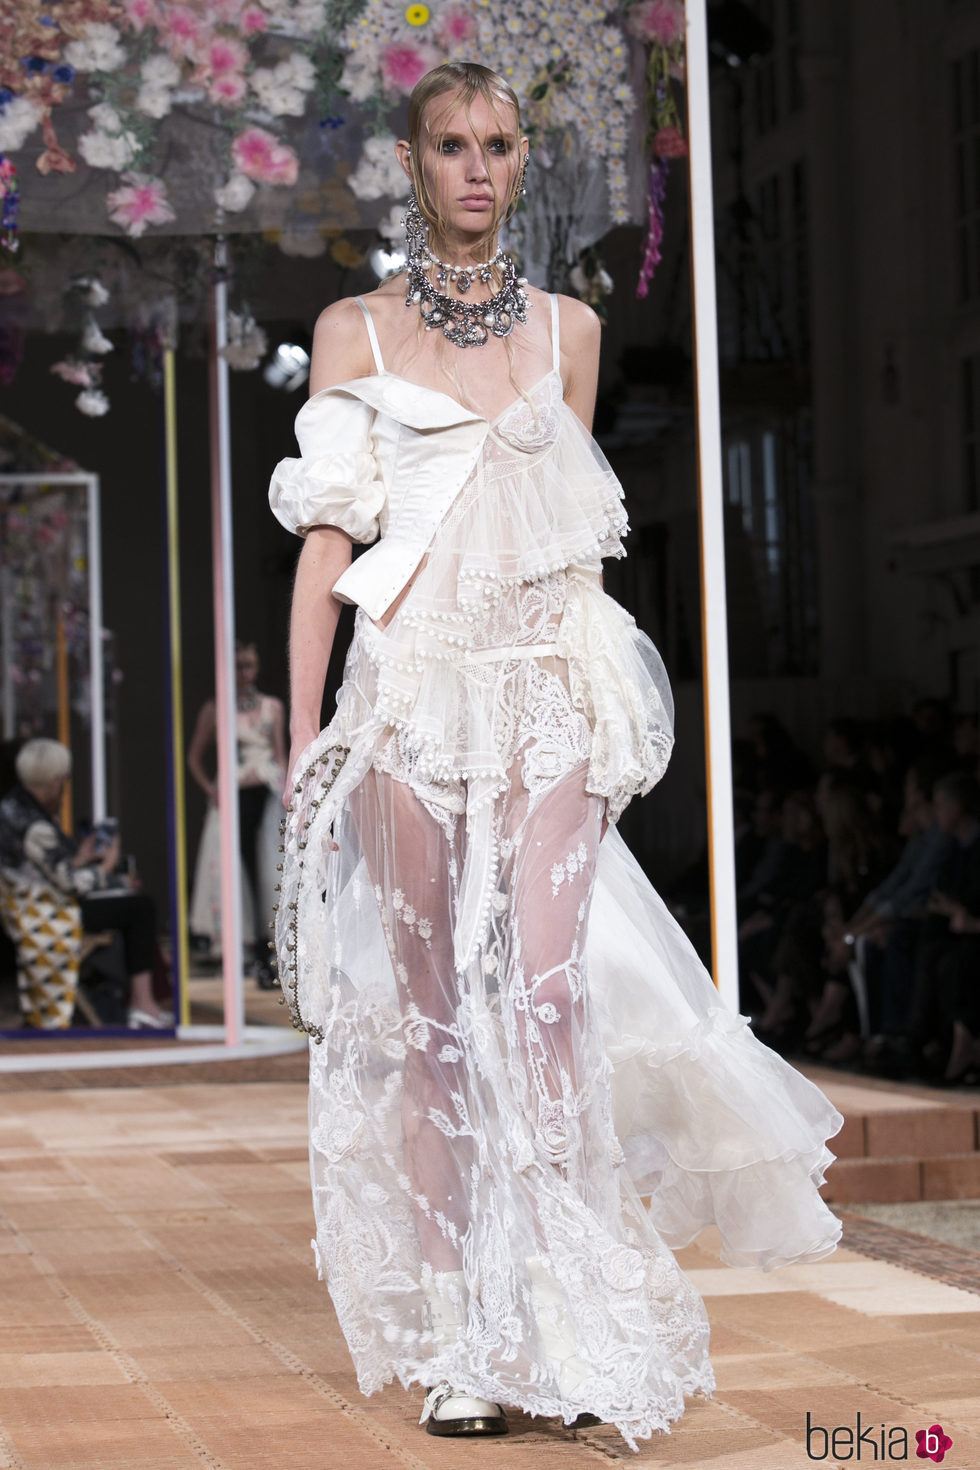 Vestido blanco de Alexander McQueen primavera/verano 2018 en la París Fashion Week